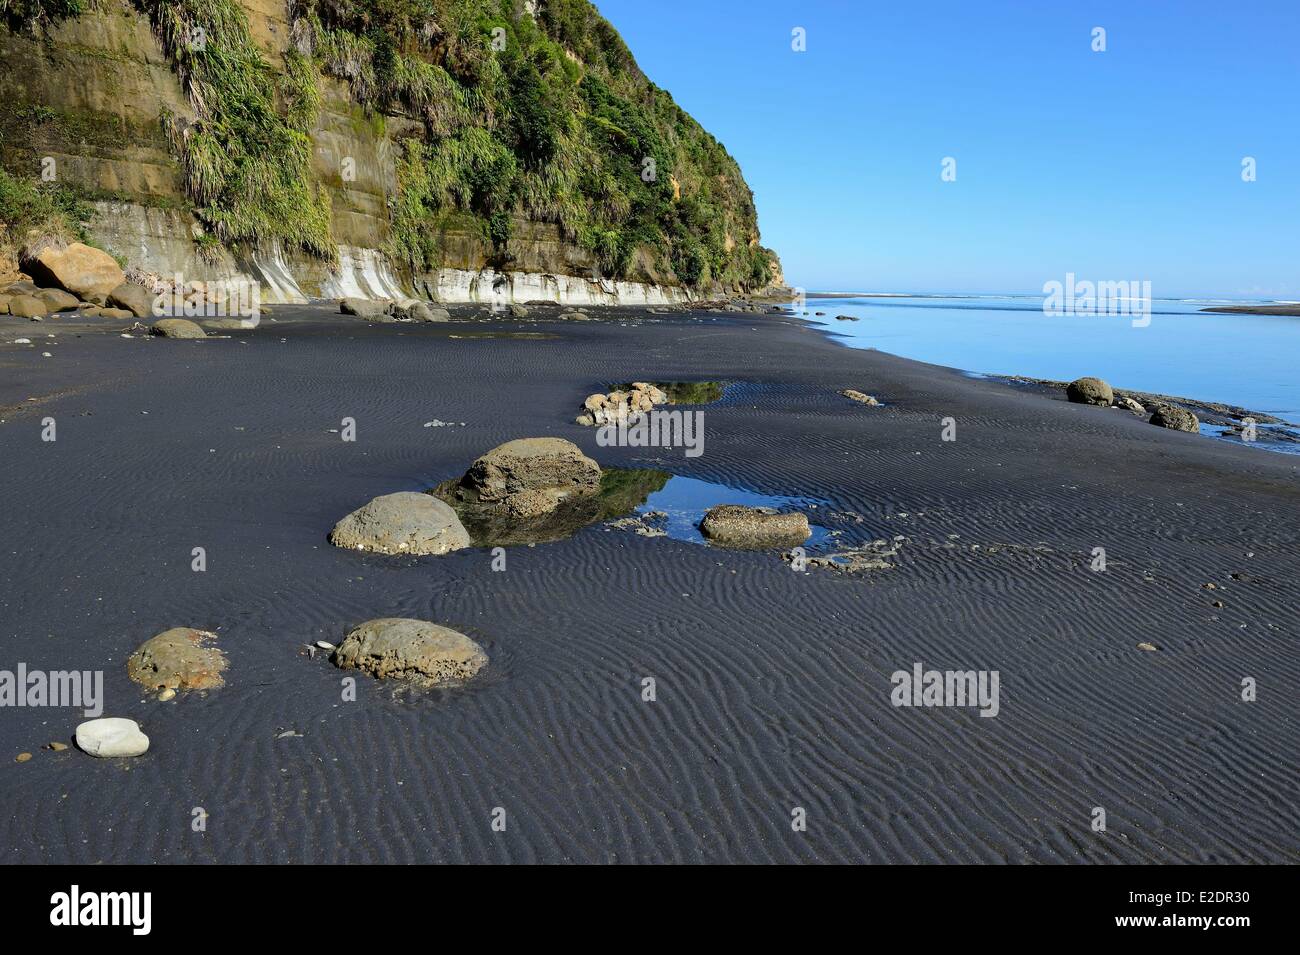 Nuova Zelanda Isola del nord Tongaporutu la sabbia nera tre sorelle spiaggia a 15 km a sud da Mokau Foto Stock